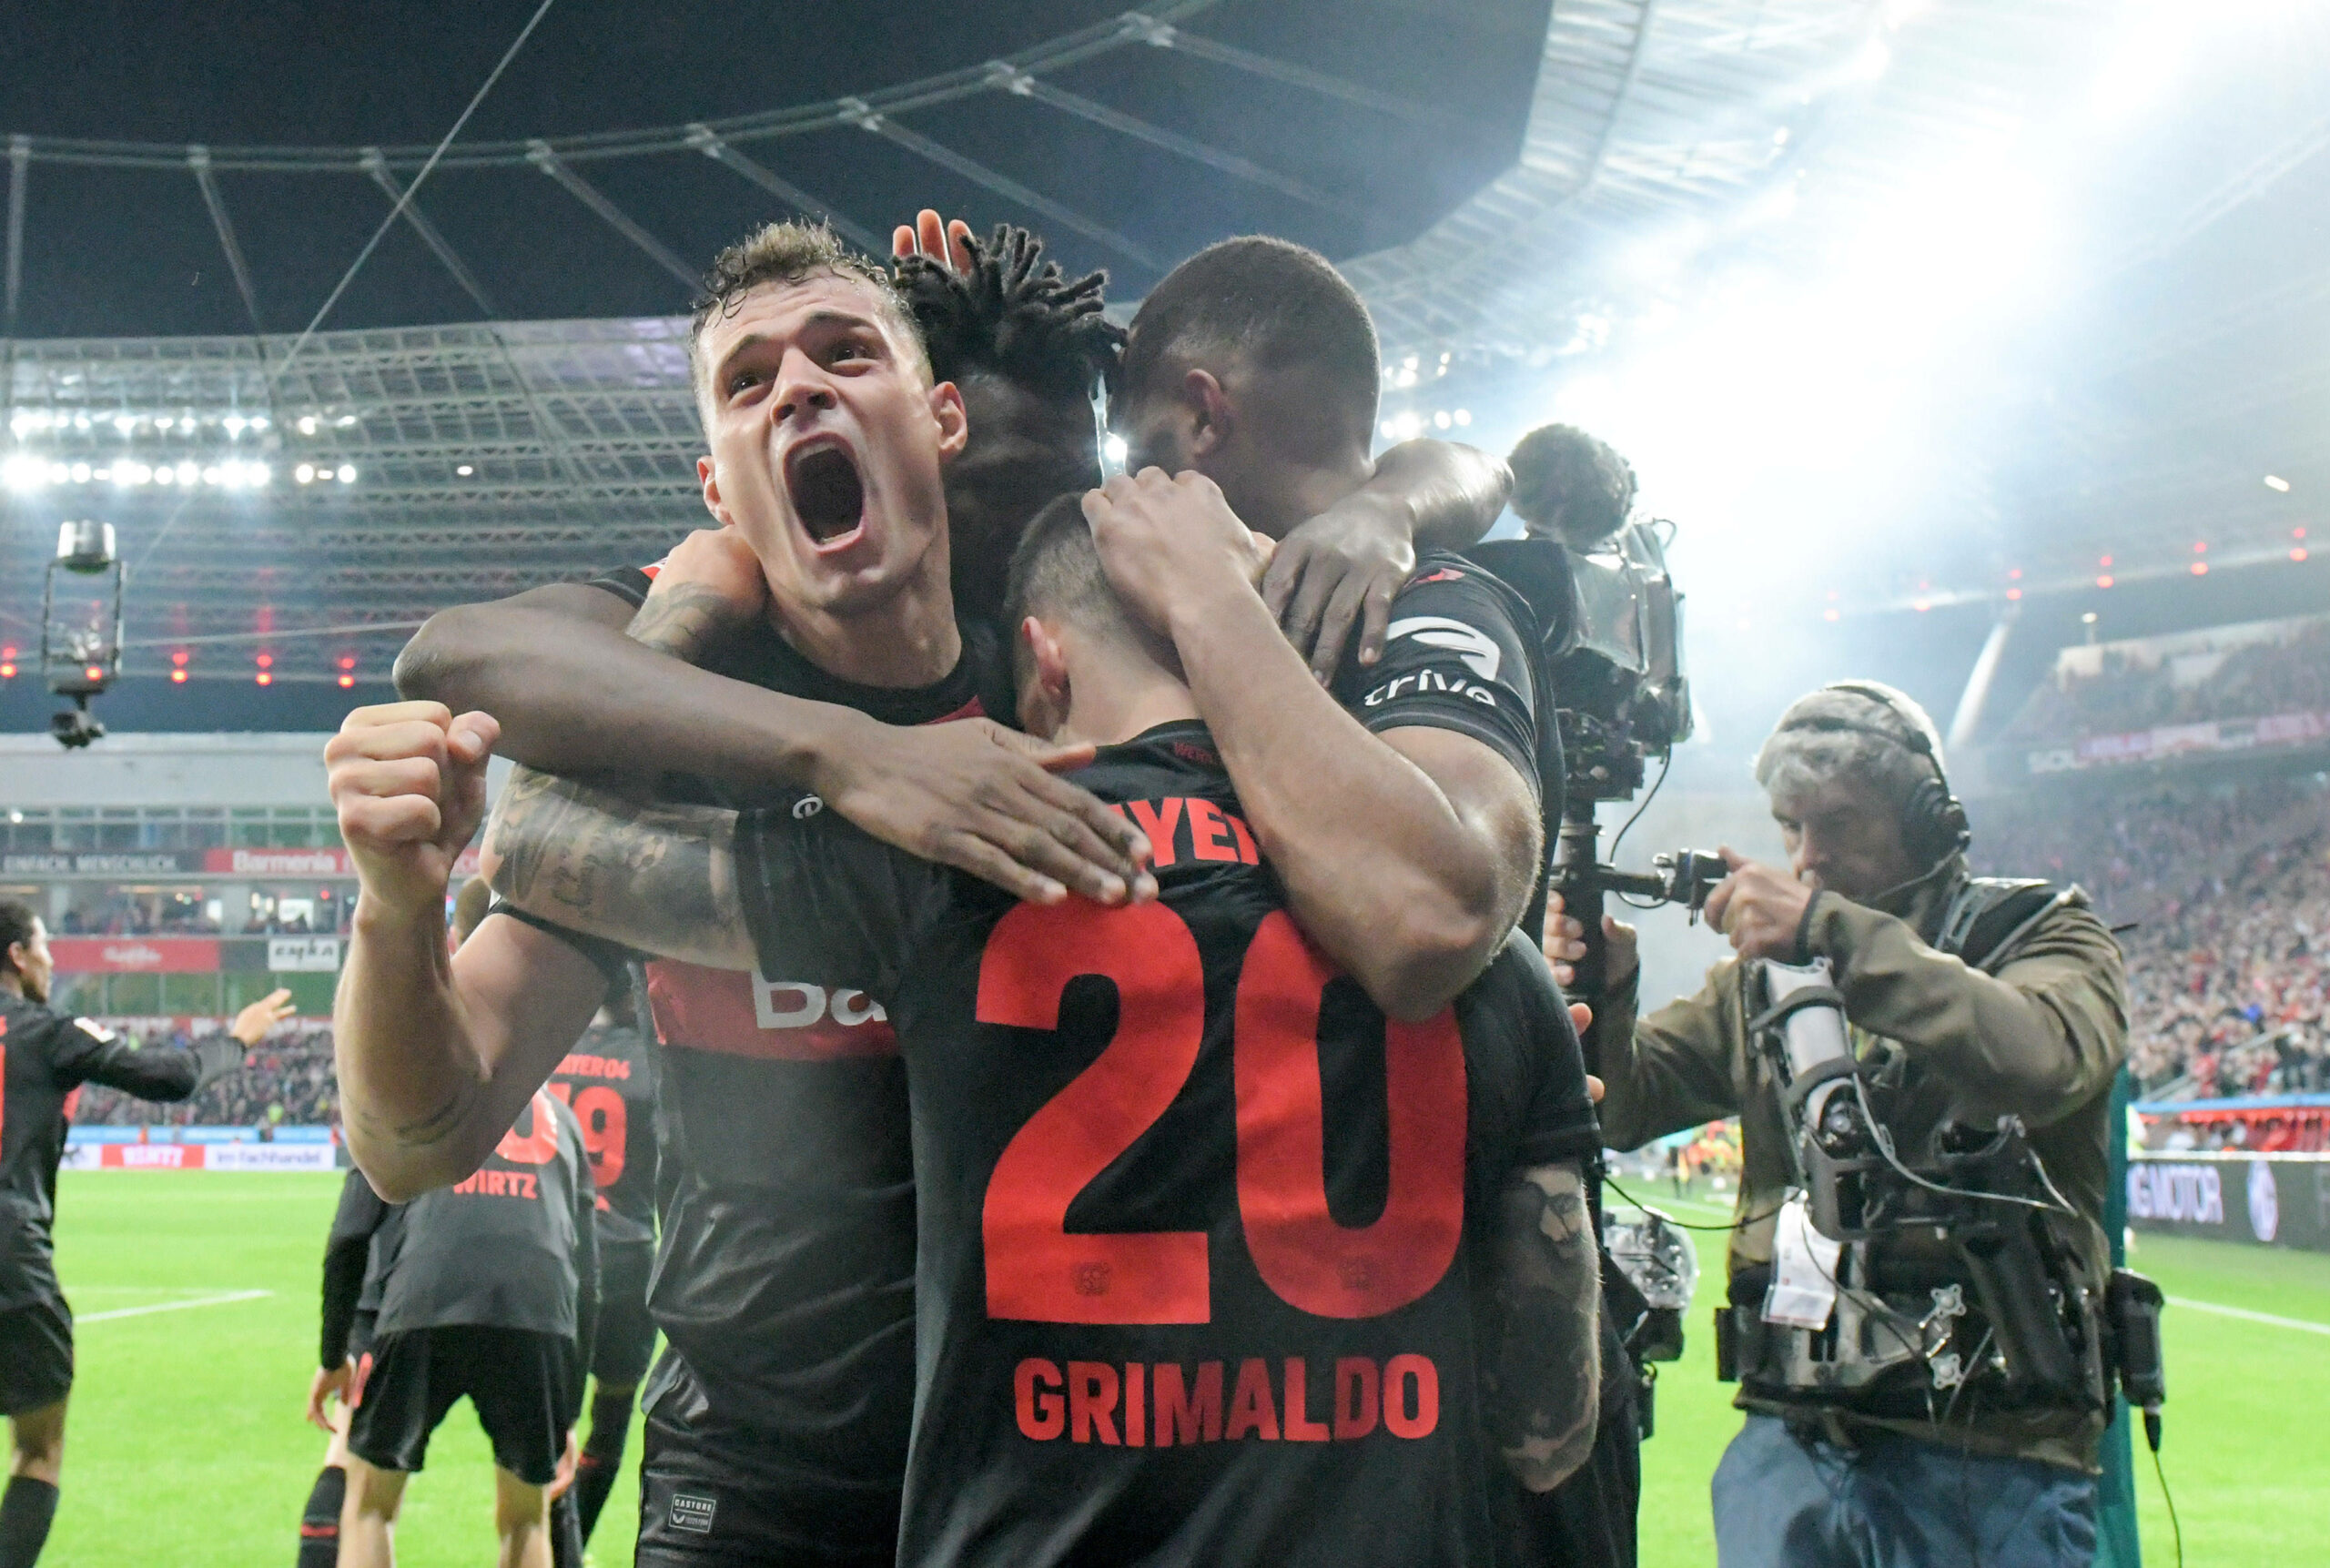 Leverkusen-Profis jubeln über das 2:0 von Grimaldo